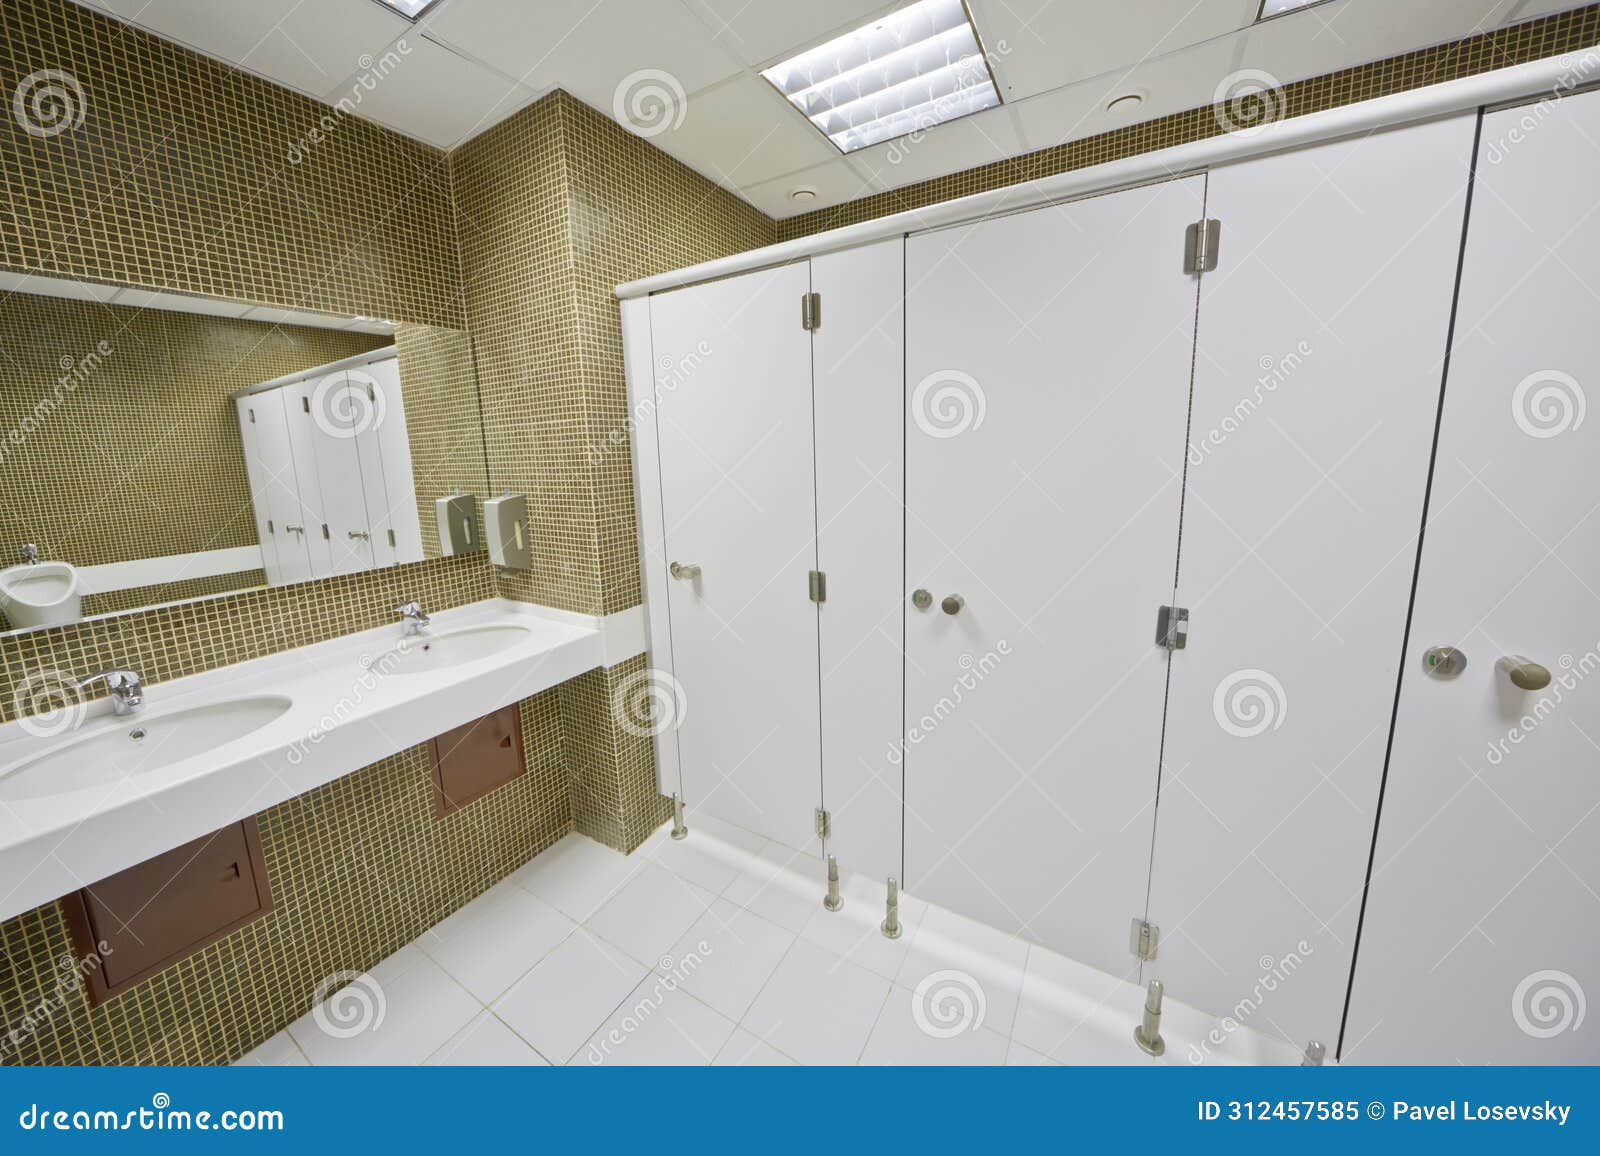 toilet room in modern busines center